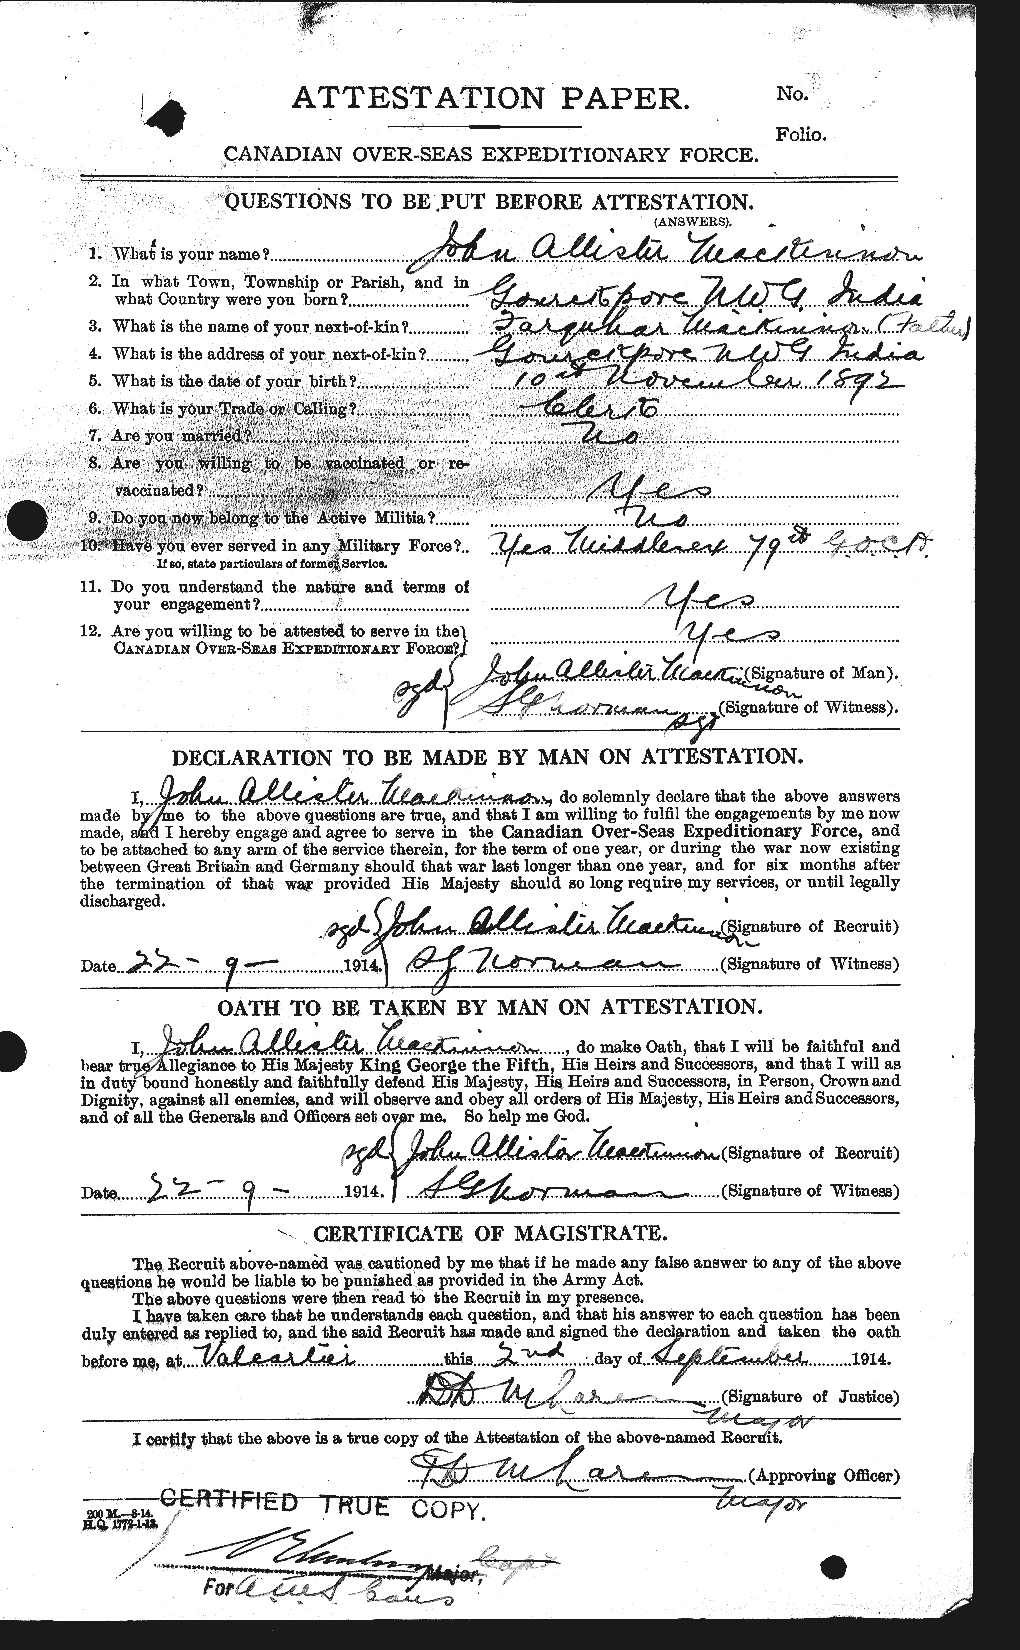 Dossiers du Personnel de la Première Guerre mondiale - CEC 533024a